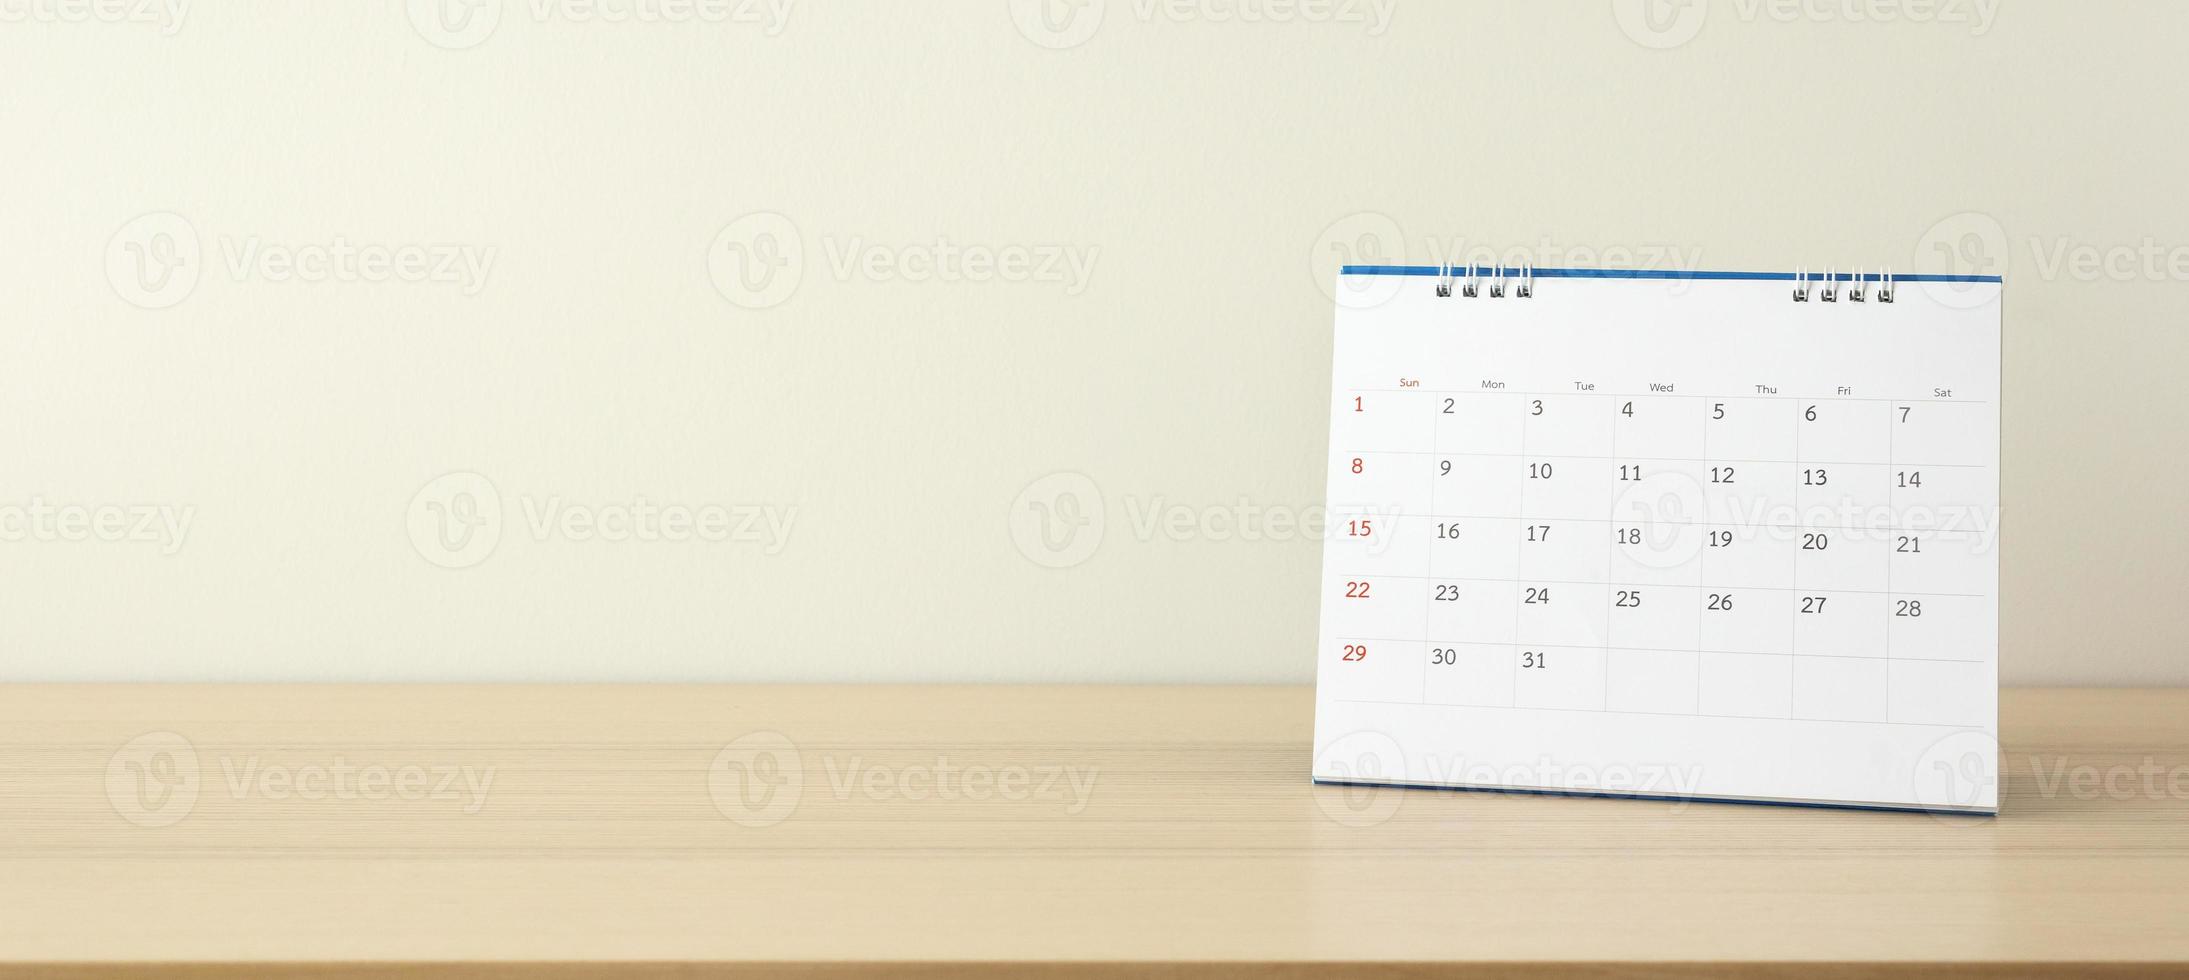 Kalenderseite hautnah auf Holztisch mit weißem Wandhintergrund Geschäftsplanungstermin Besprechungskonzept foto